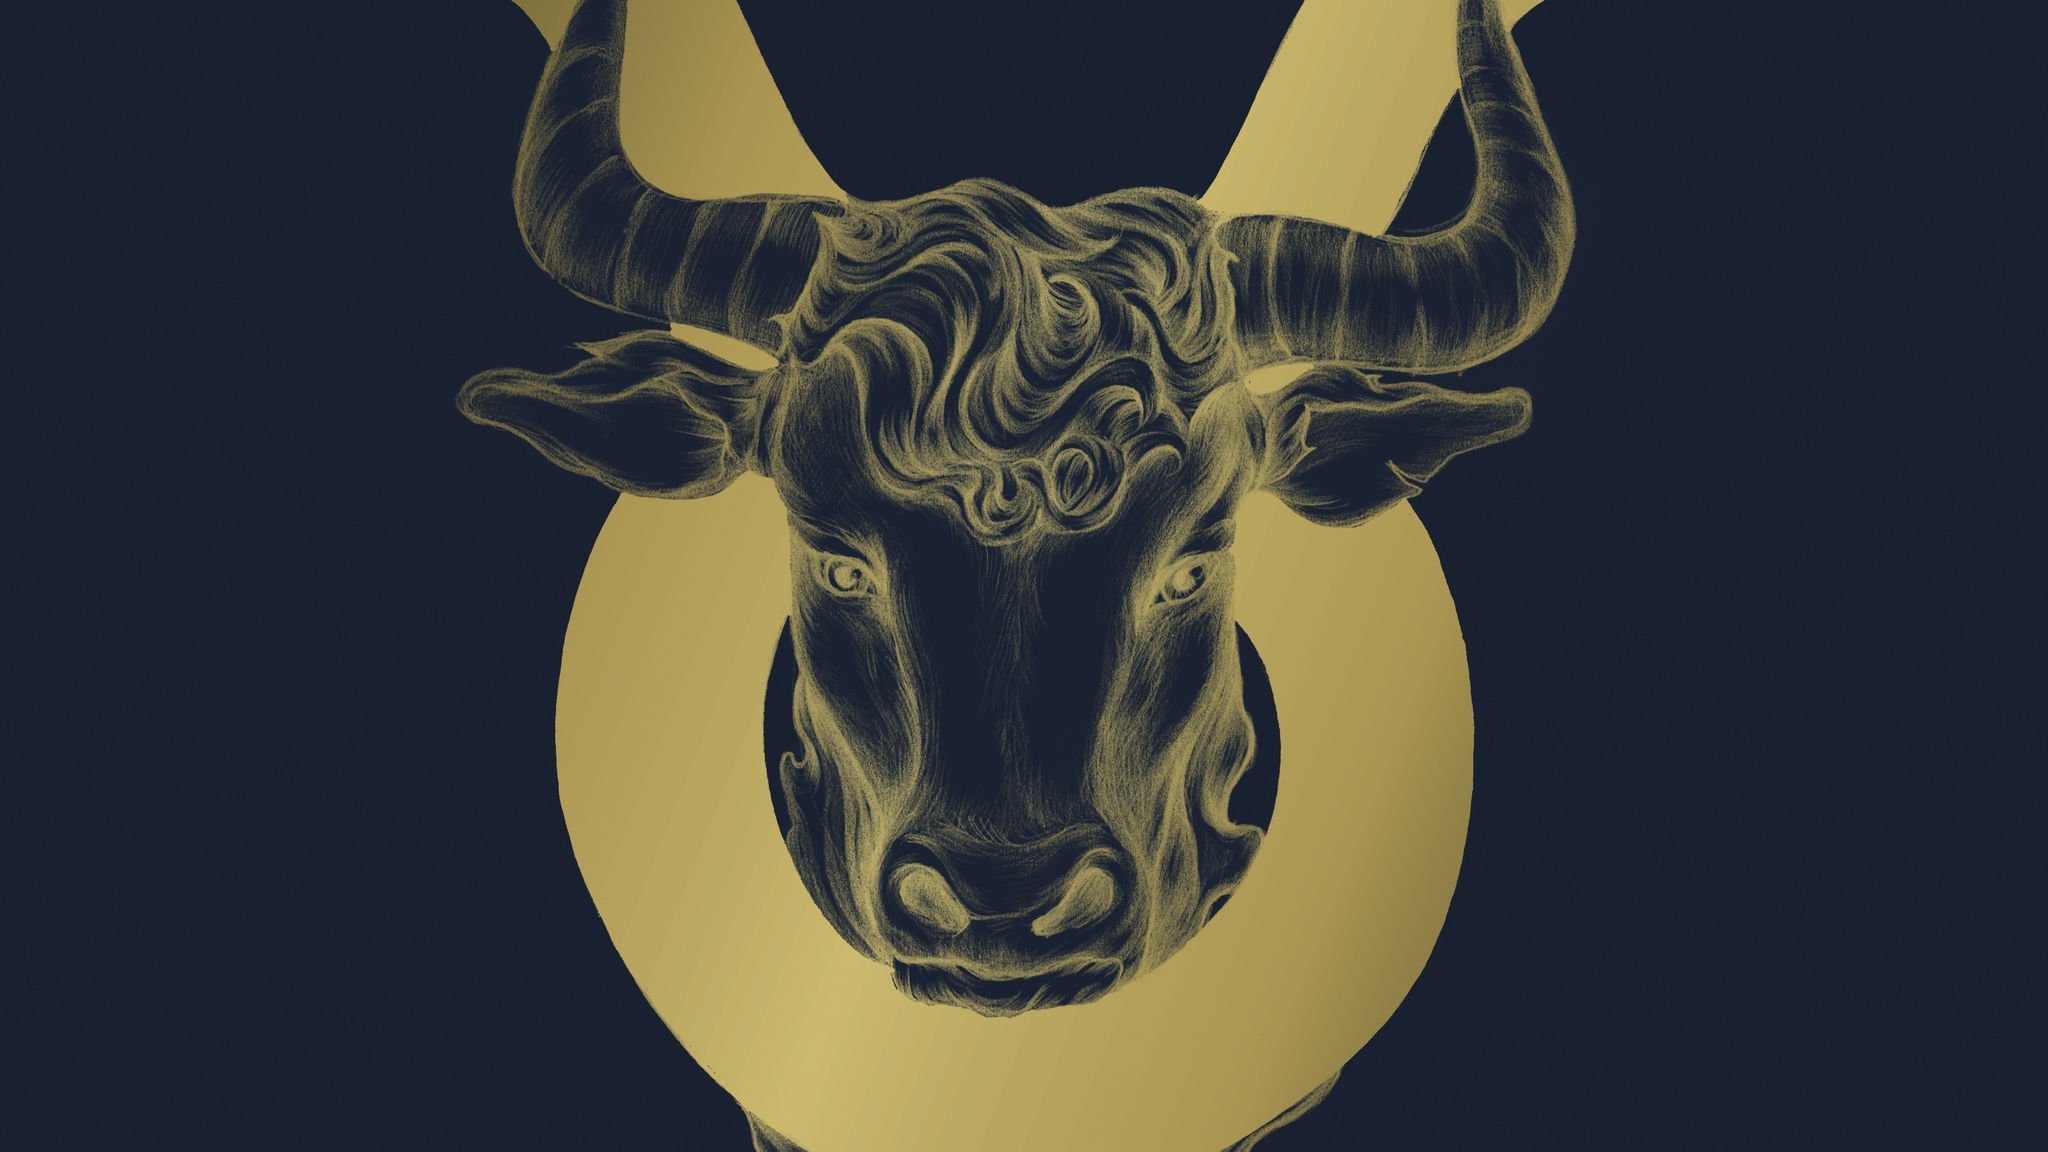 Símbolo do signo de touro nas cores dourado e azul marinho